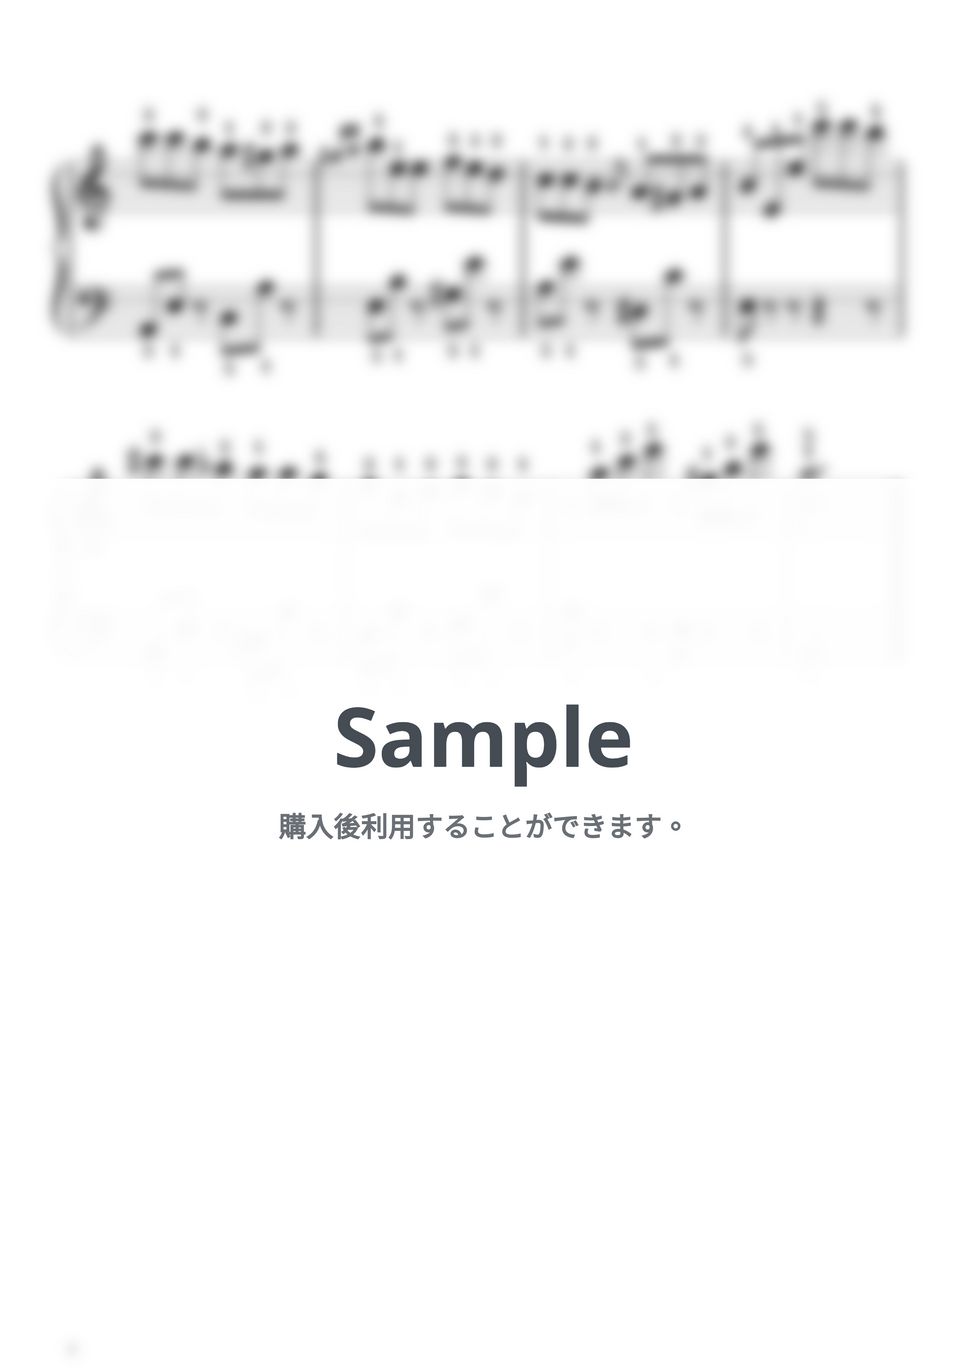 フランツ・リスト - 【初級】ラ・カンパネラ(鐘) (フランツ・リスト) by ピアノのせんせいの楽譜集